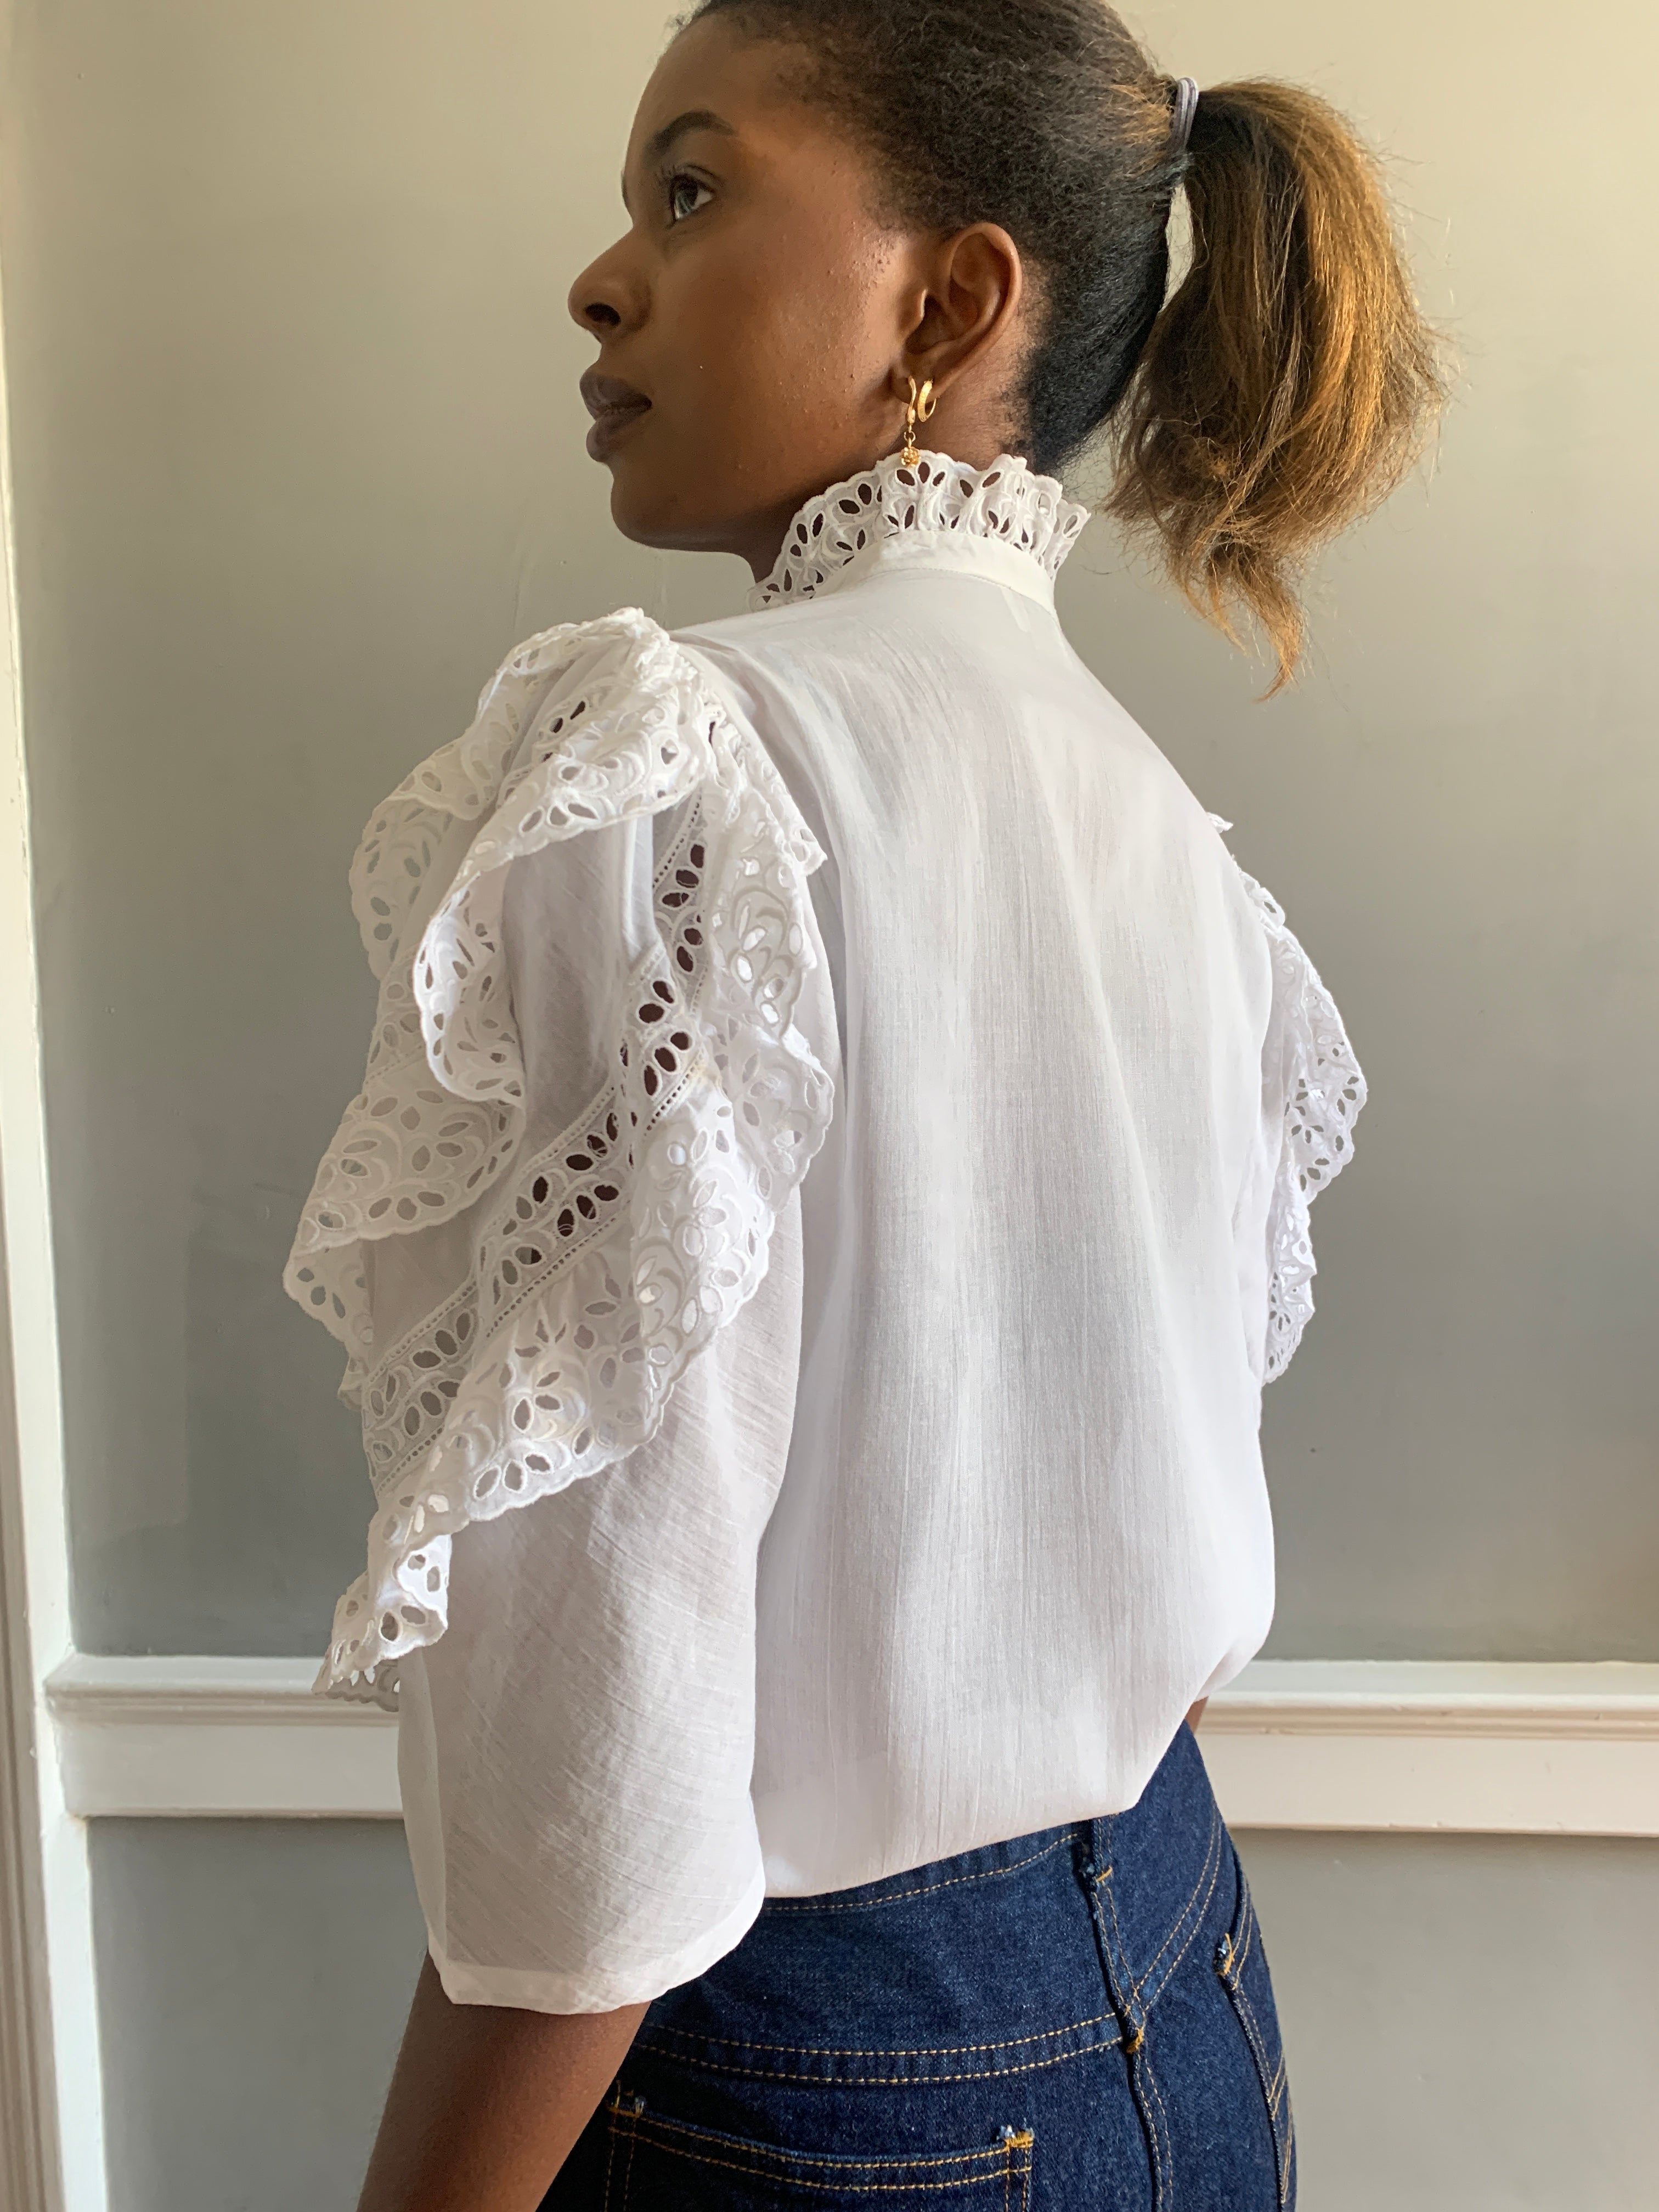 Desi vintage cotton broderie blouse